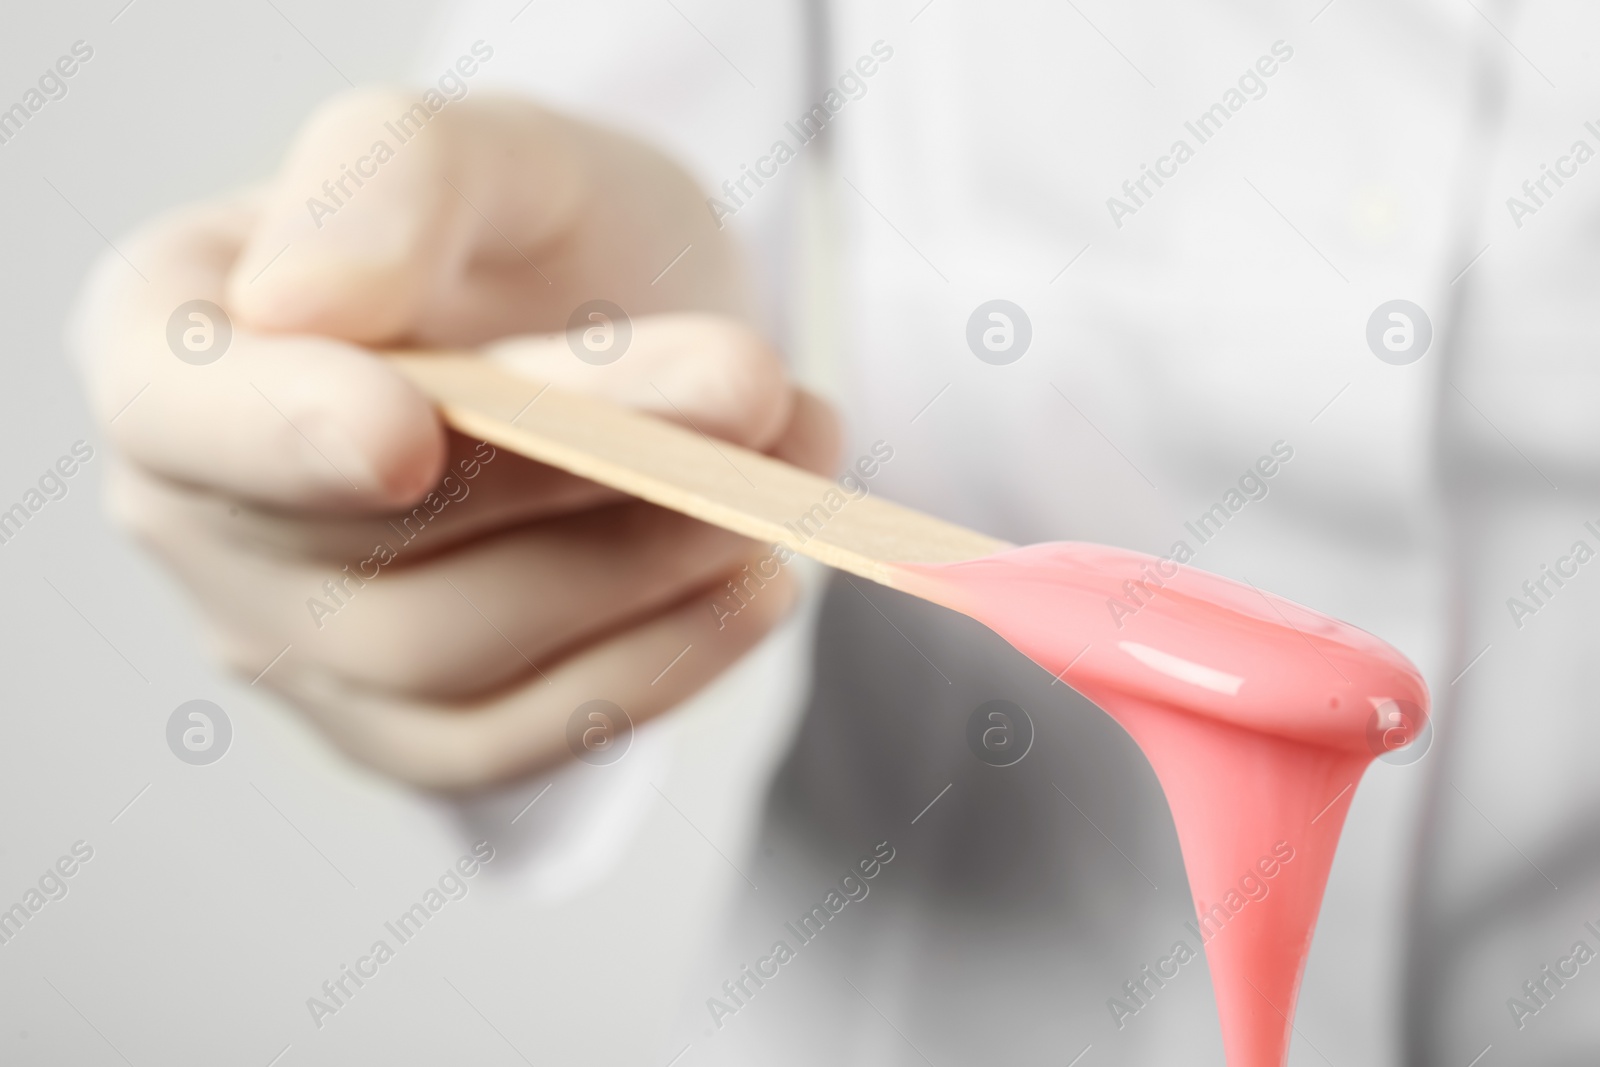 Photo of Woman holding spatula with hot depilatory wax, closeup